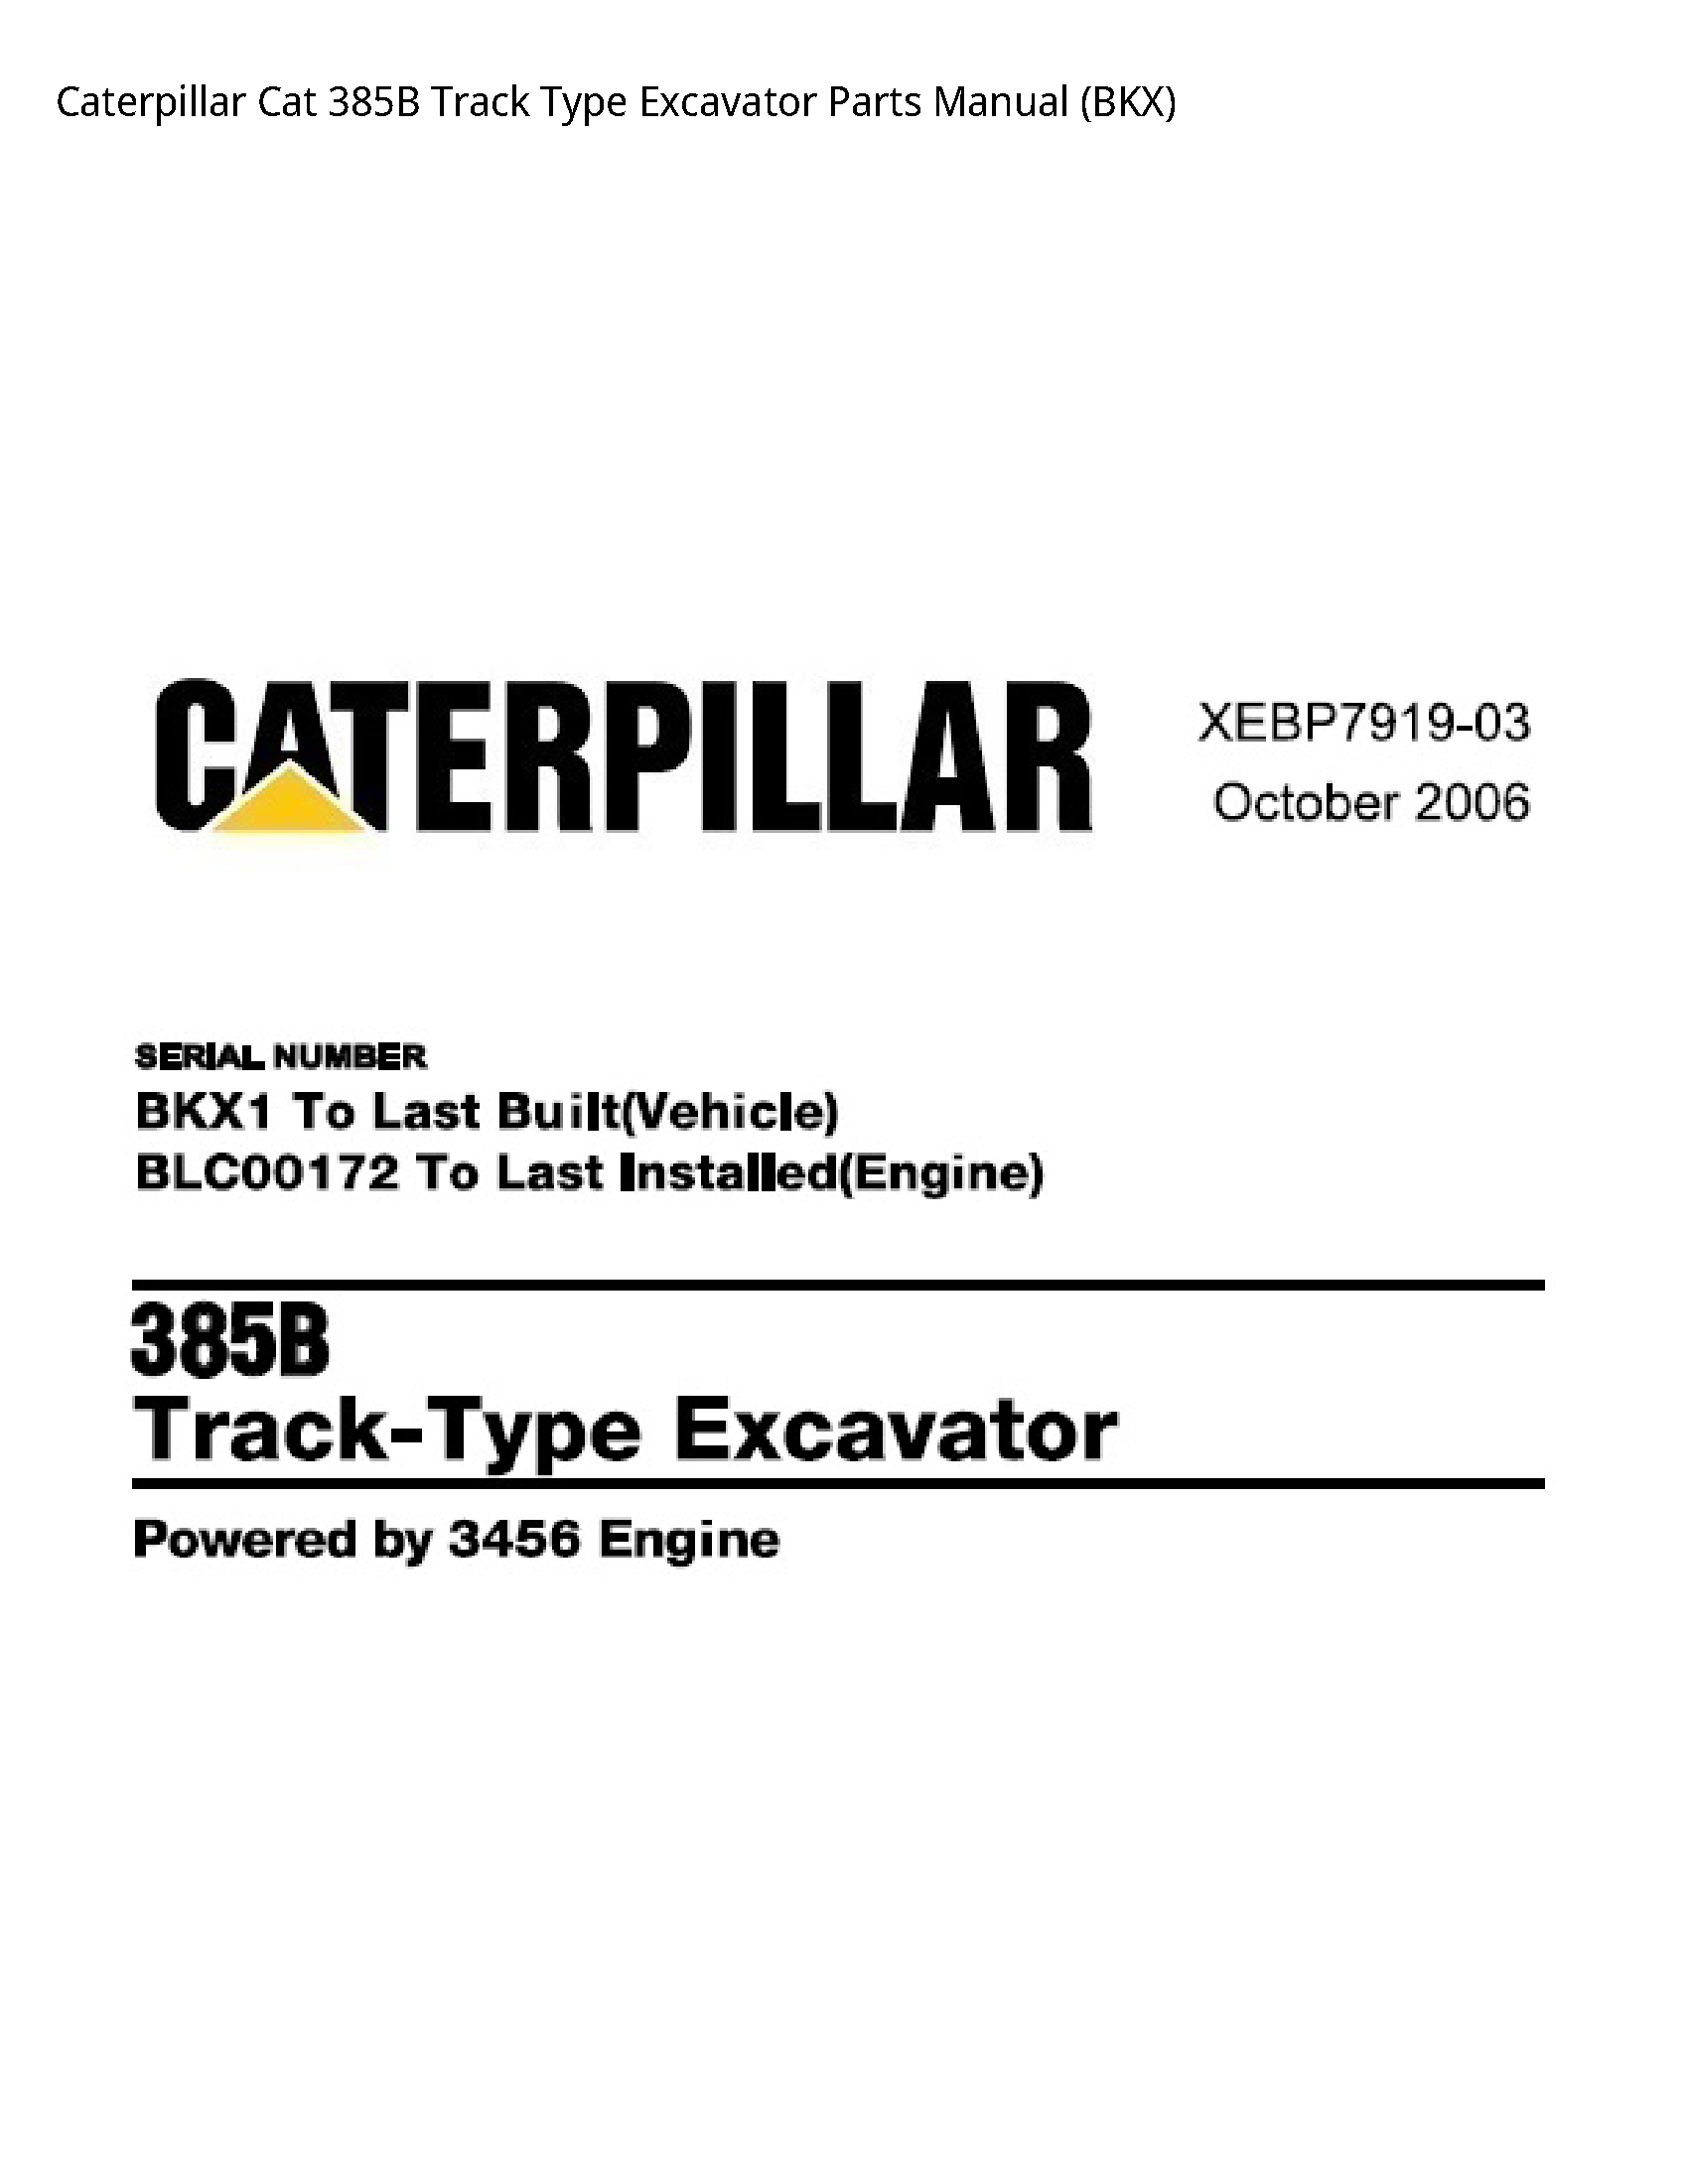 Caterpillar 385B Cat Track Type Excavator Parts manual